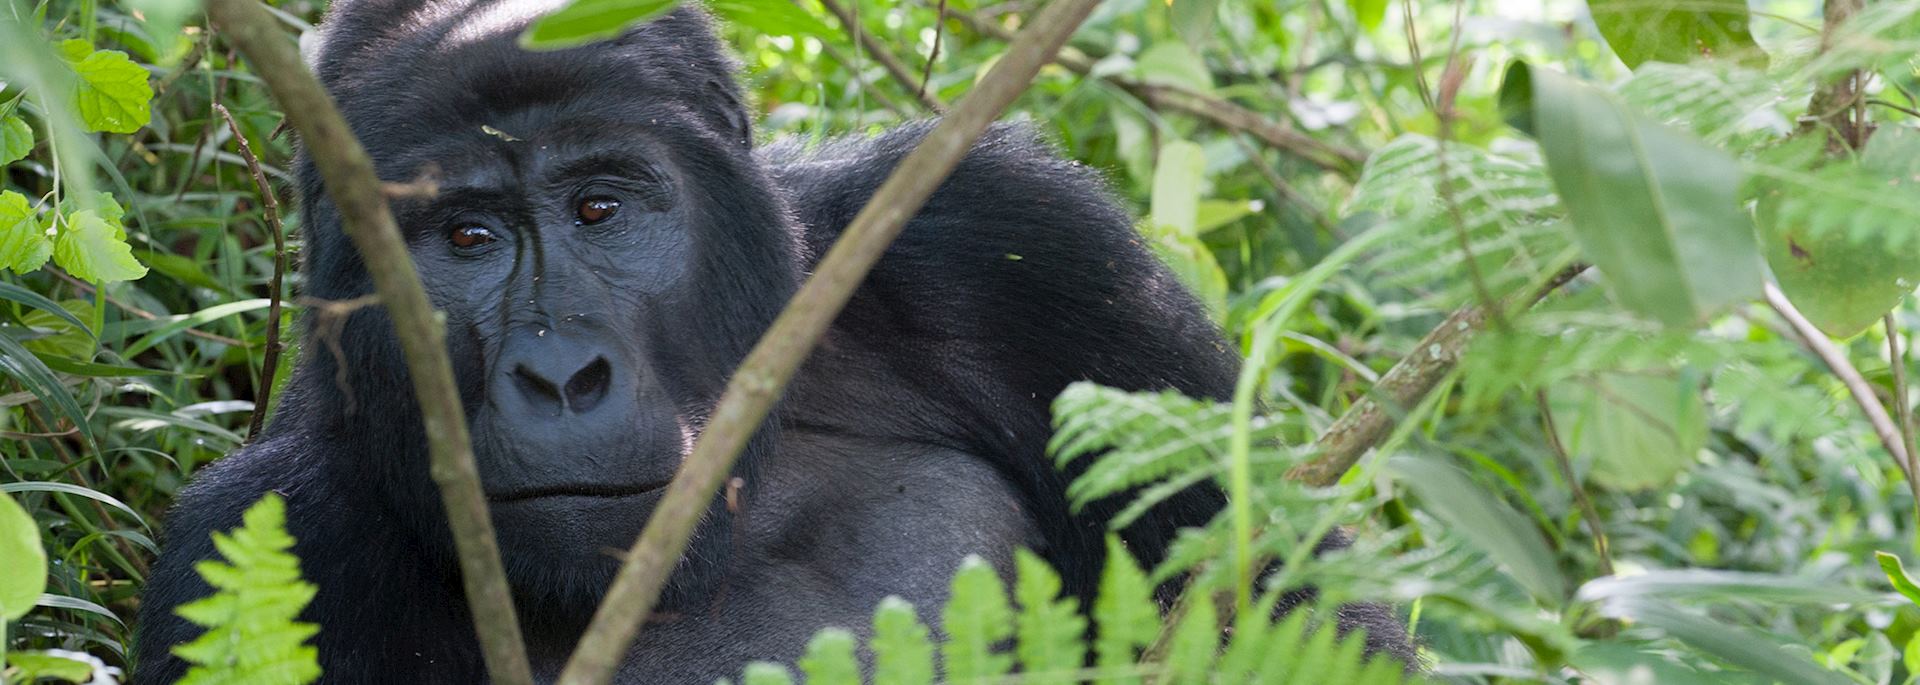 Gorilla, Bwindi Impenetrable Forest, Uganda